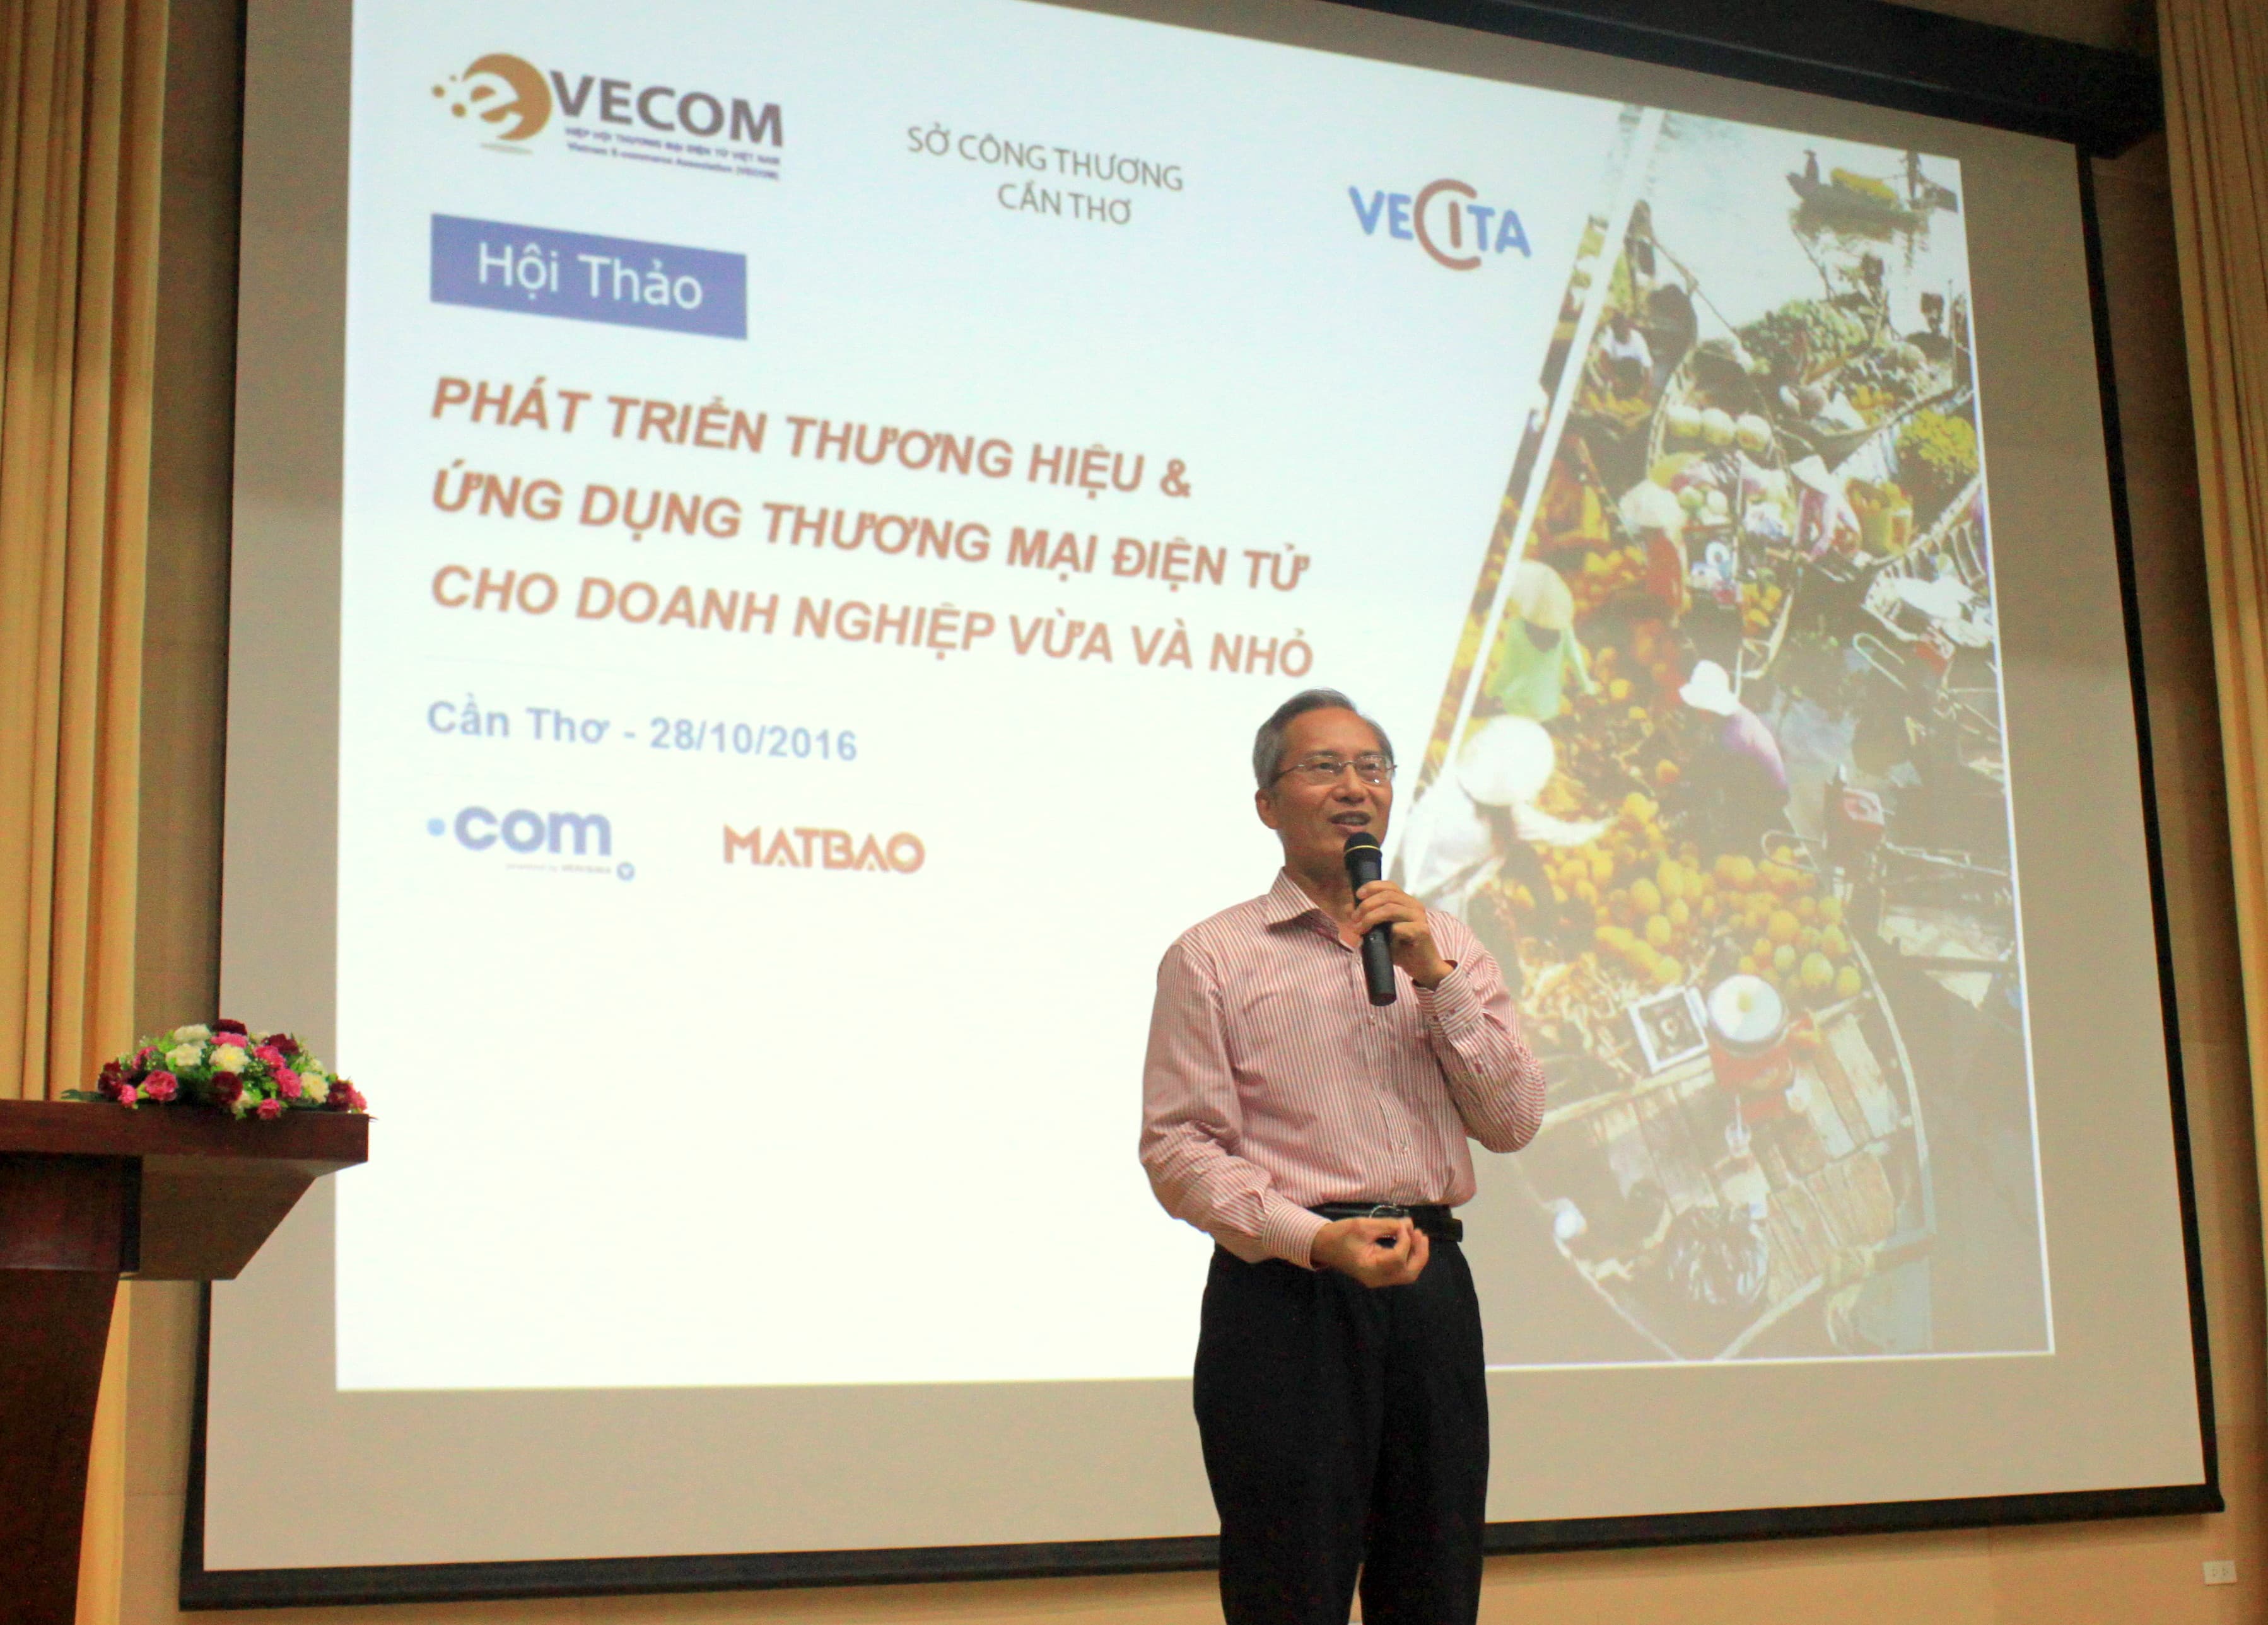 Ông Nguyễn Thanh Hưng – Chủ tịch VECOM dự đoán TMĐT Việt Nam đến năm 2020 đạt 10 tỷ đô la